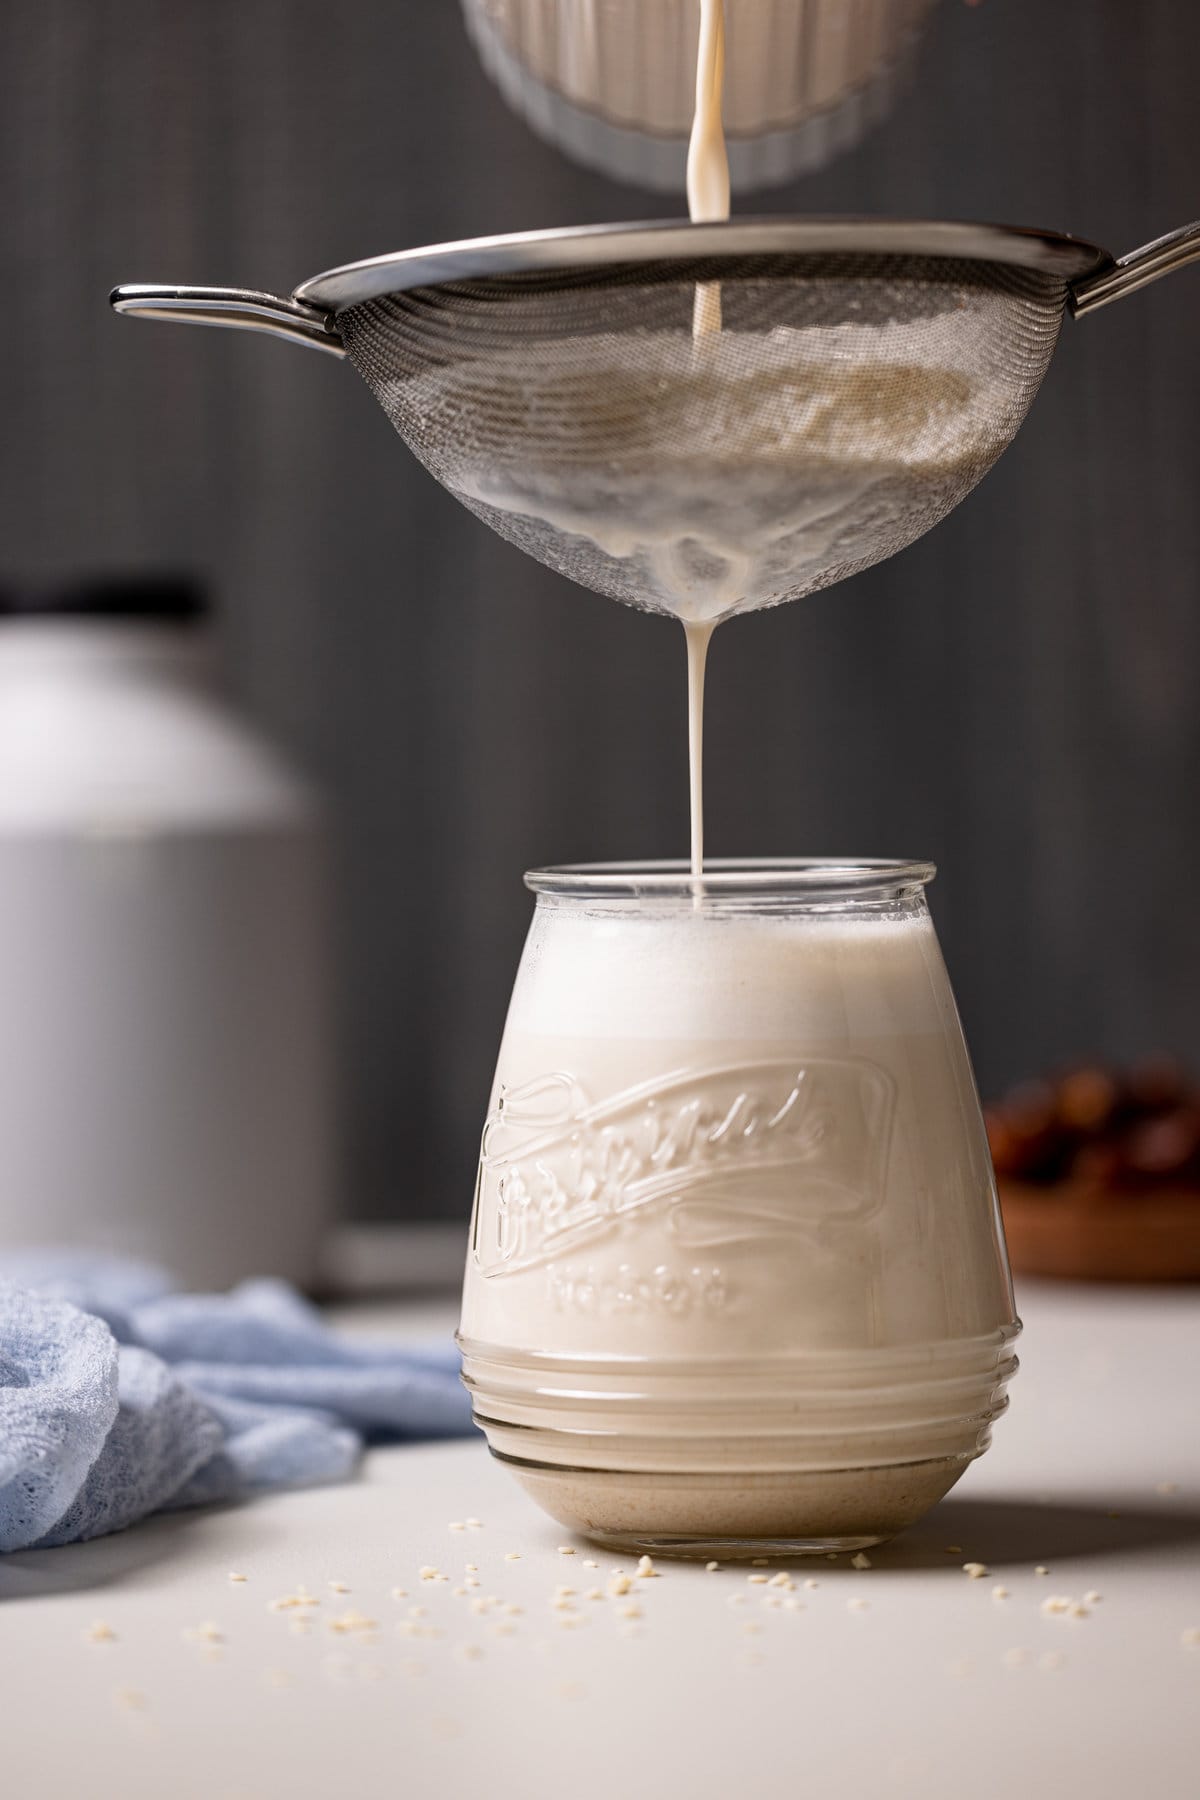 Creamy Vanilla Sesame Milk pouring through a sieve into a glass